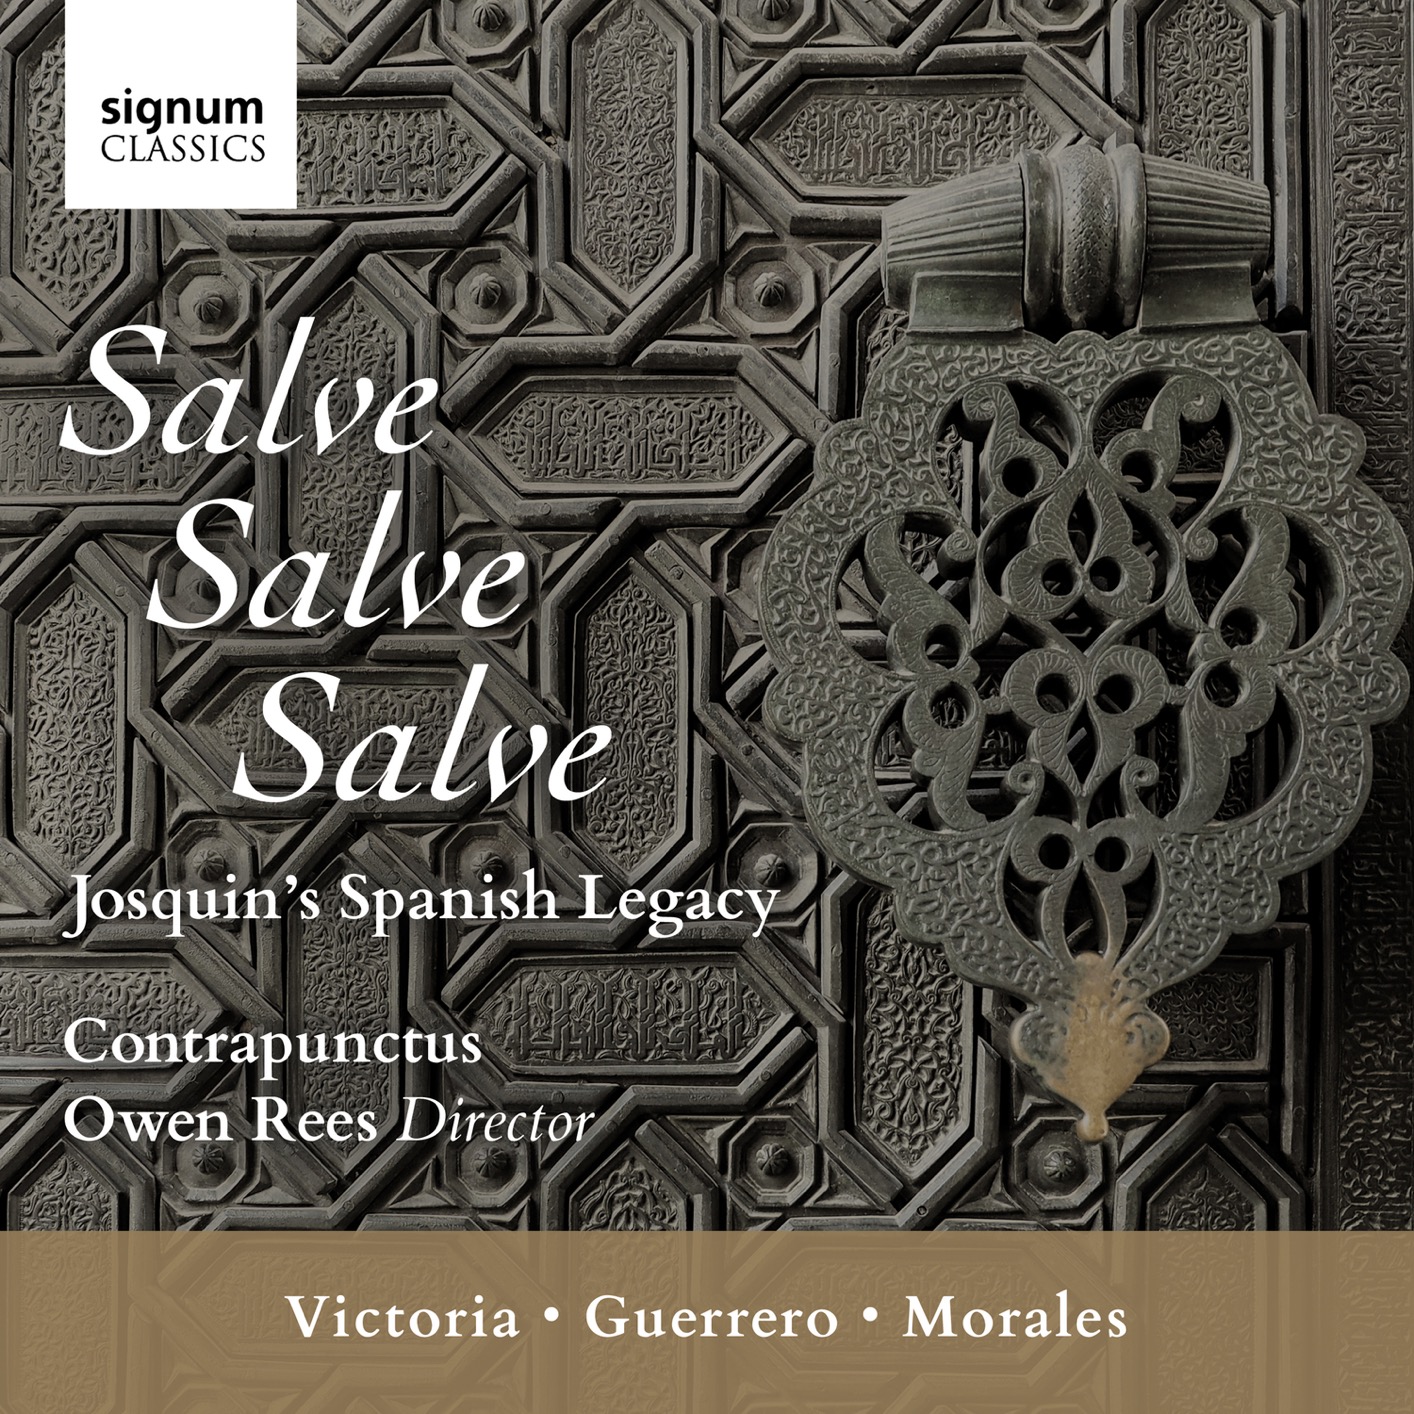 Contrapunctus & Owen Rees – Salve, Salve, Salve: Josquin’s Spanish Legacy (2020) [FLAC 24bit/96kHz]